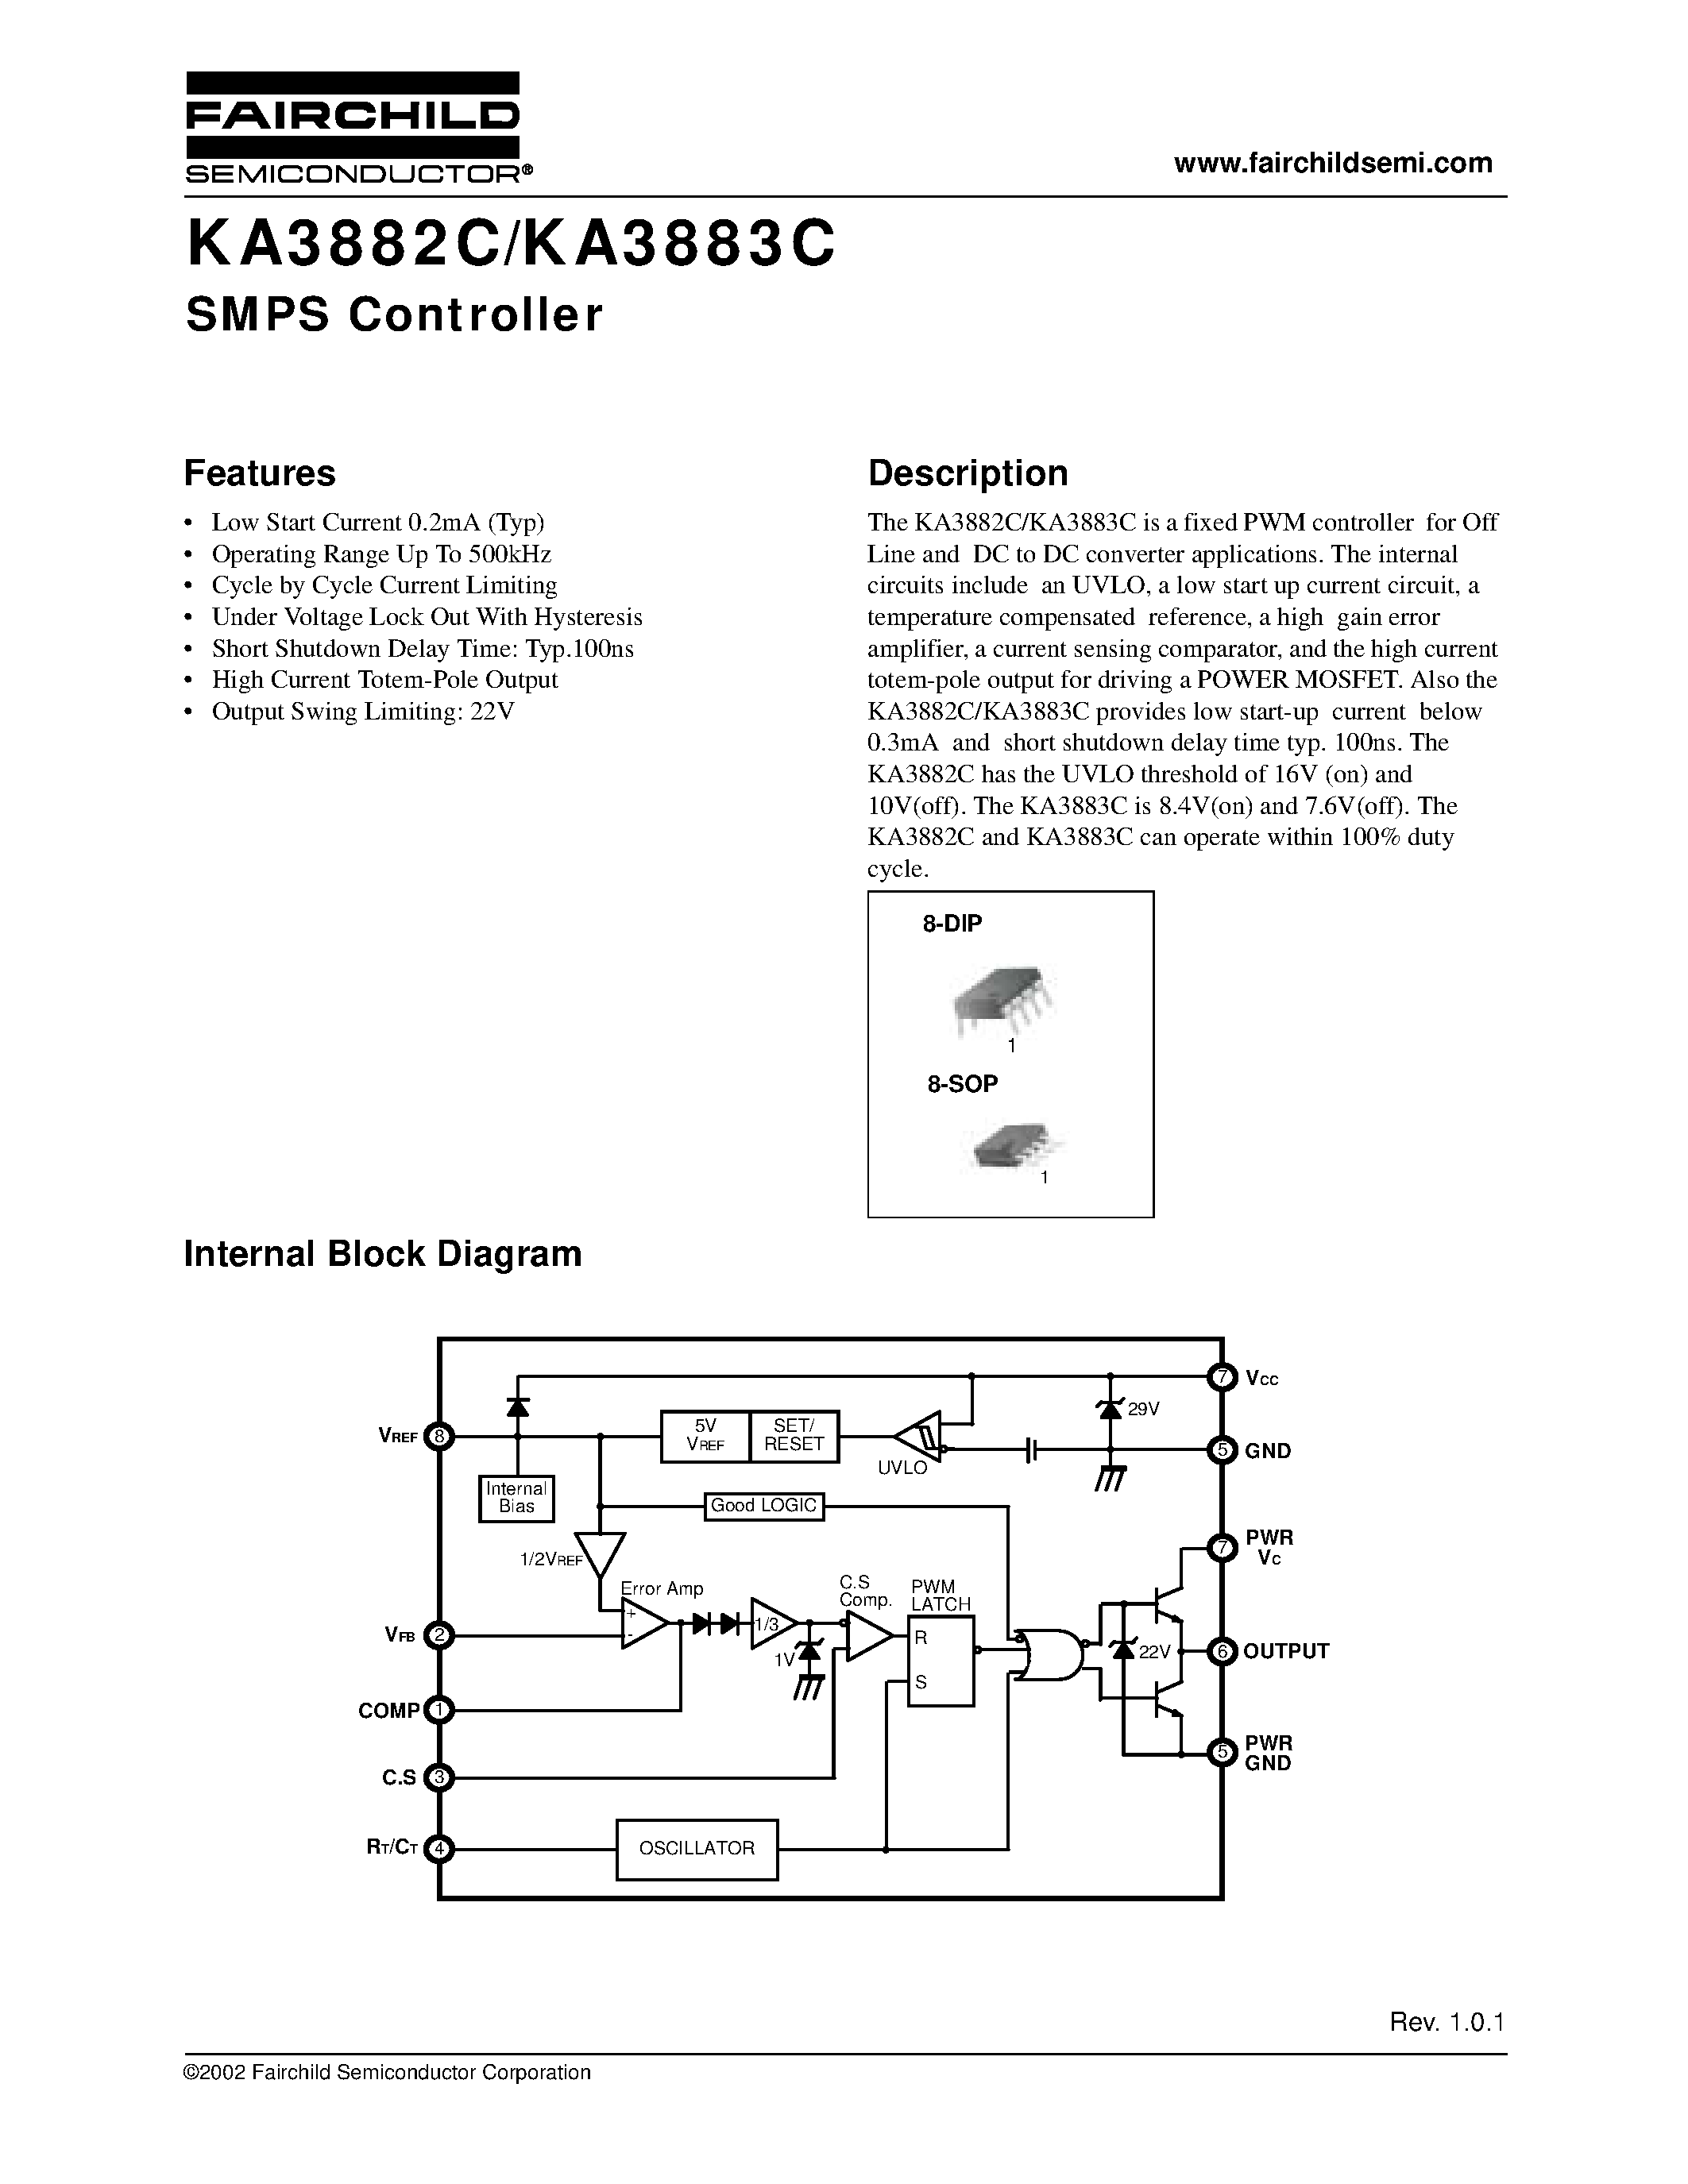 Datasheet KA3883CD - SMPS Controller page 1